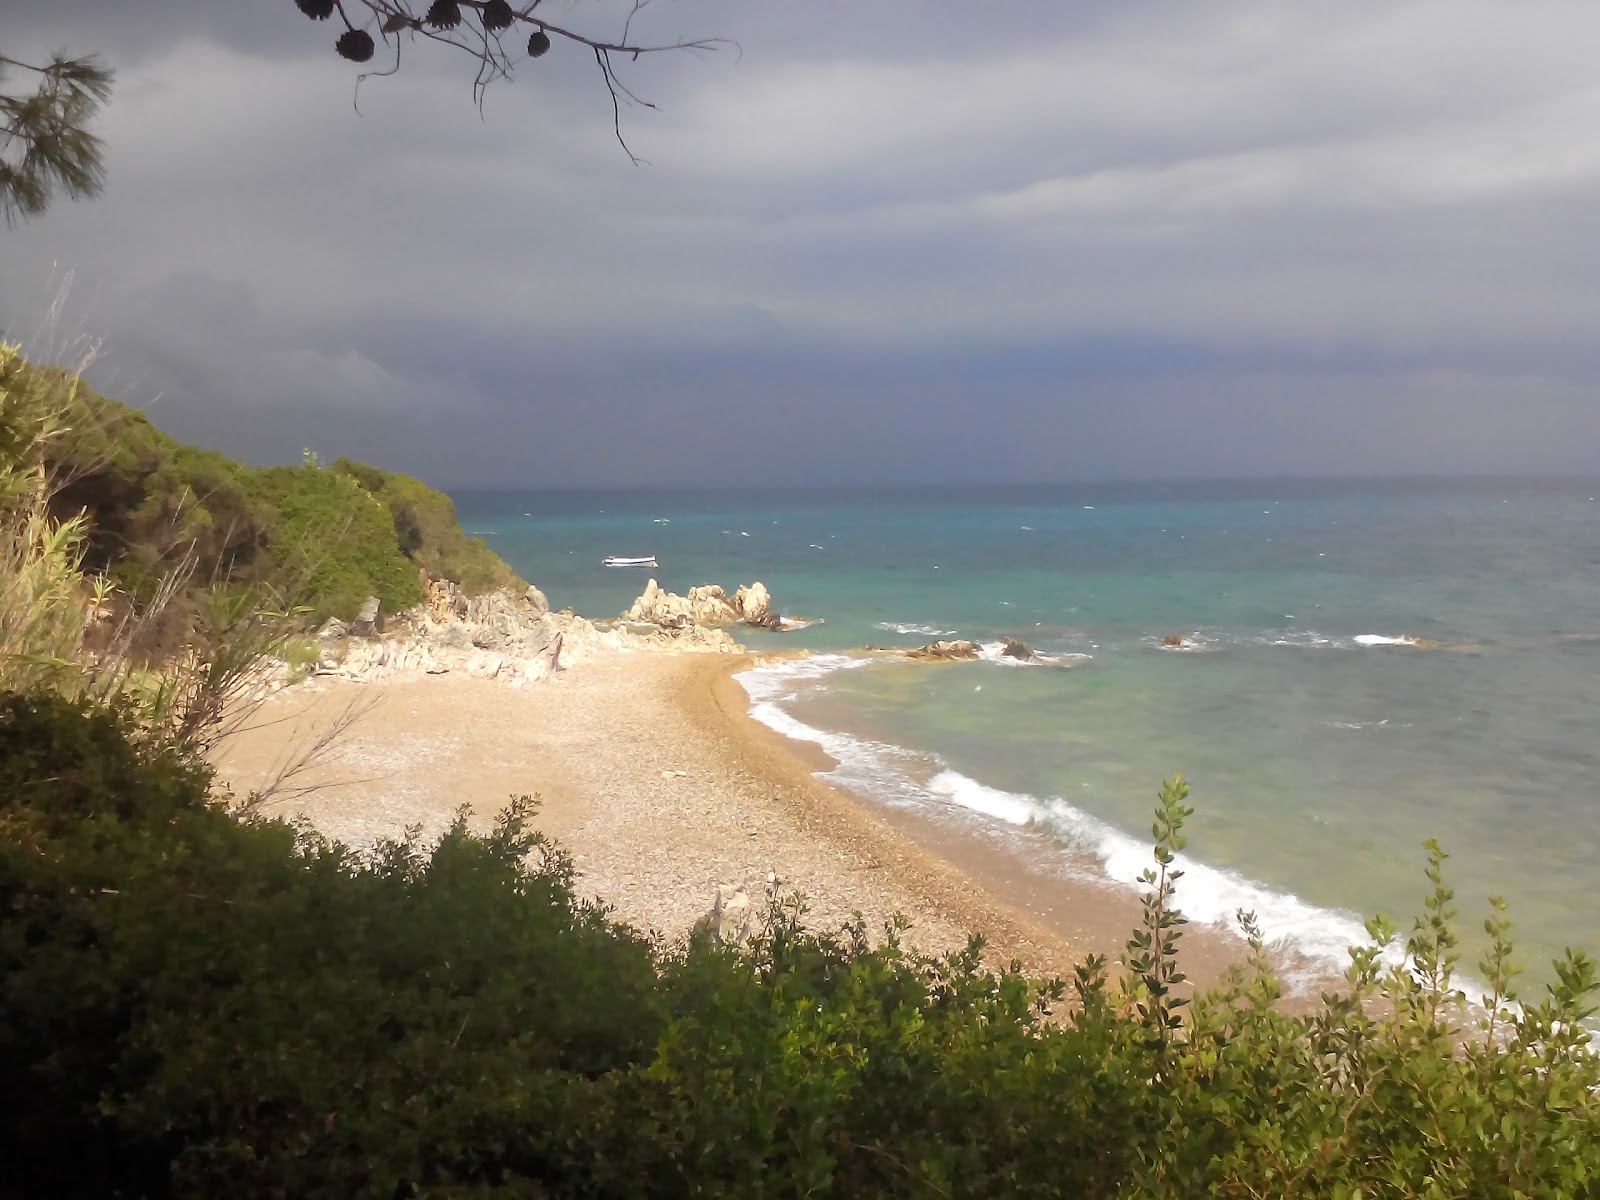 Foto von Kalamaki beach II befindet sich in natürlicher umgebung